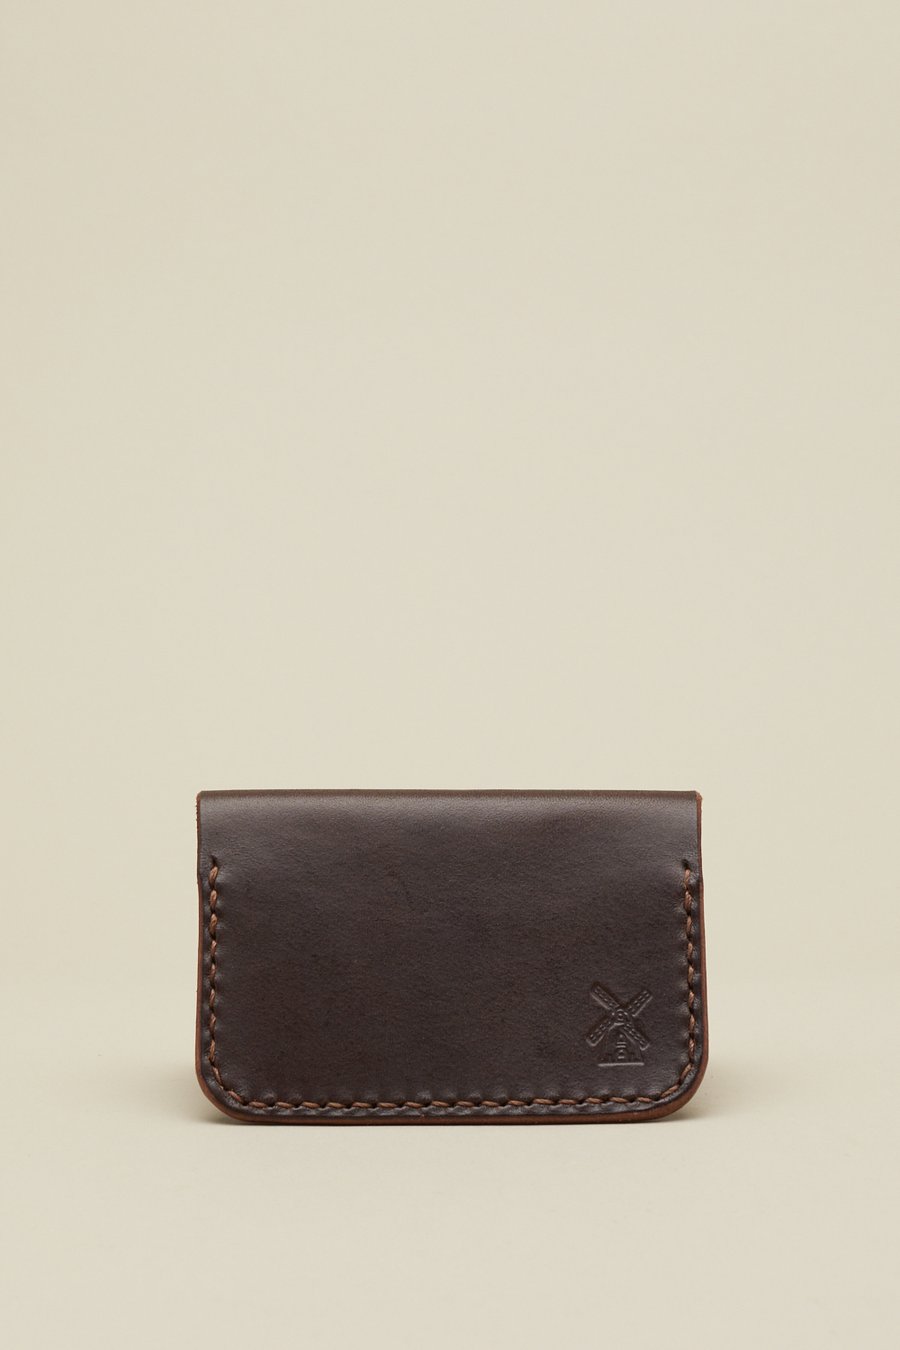 Image of Fold Wallet in Walnut